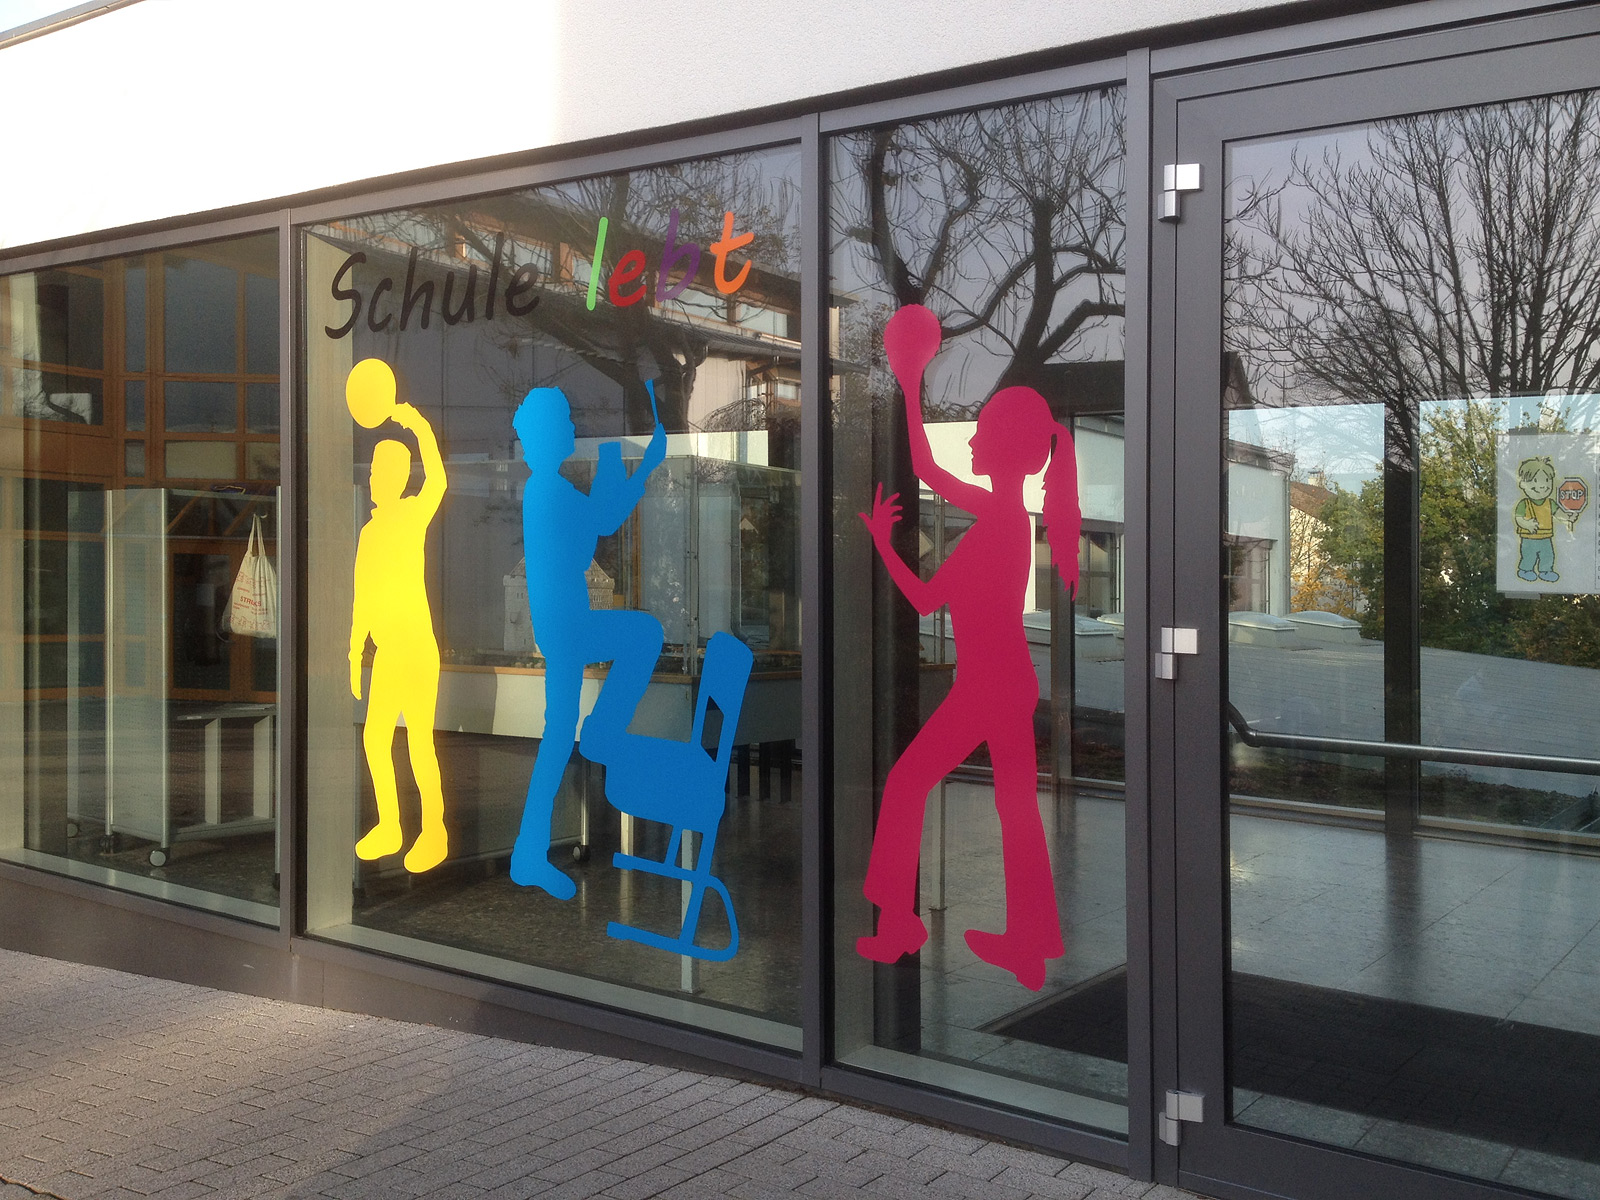 Farbenfrohe Kinderumrisse aus Folie und der Slogan "Schule lebt" an den Fenstern der Oberasbacher Grundschule.